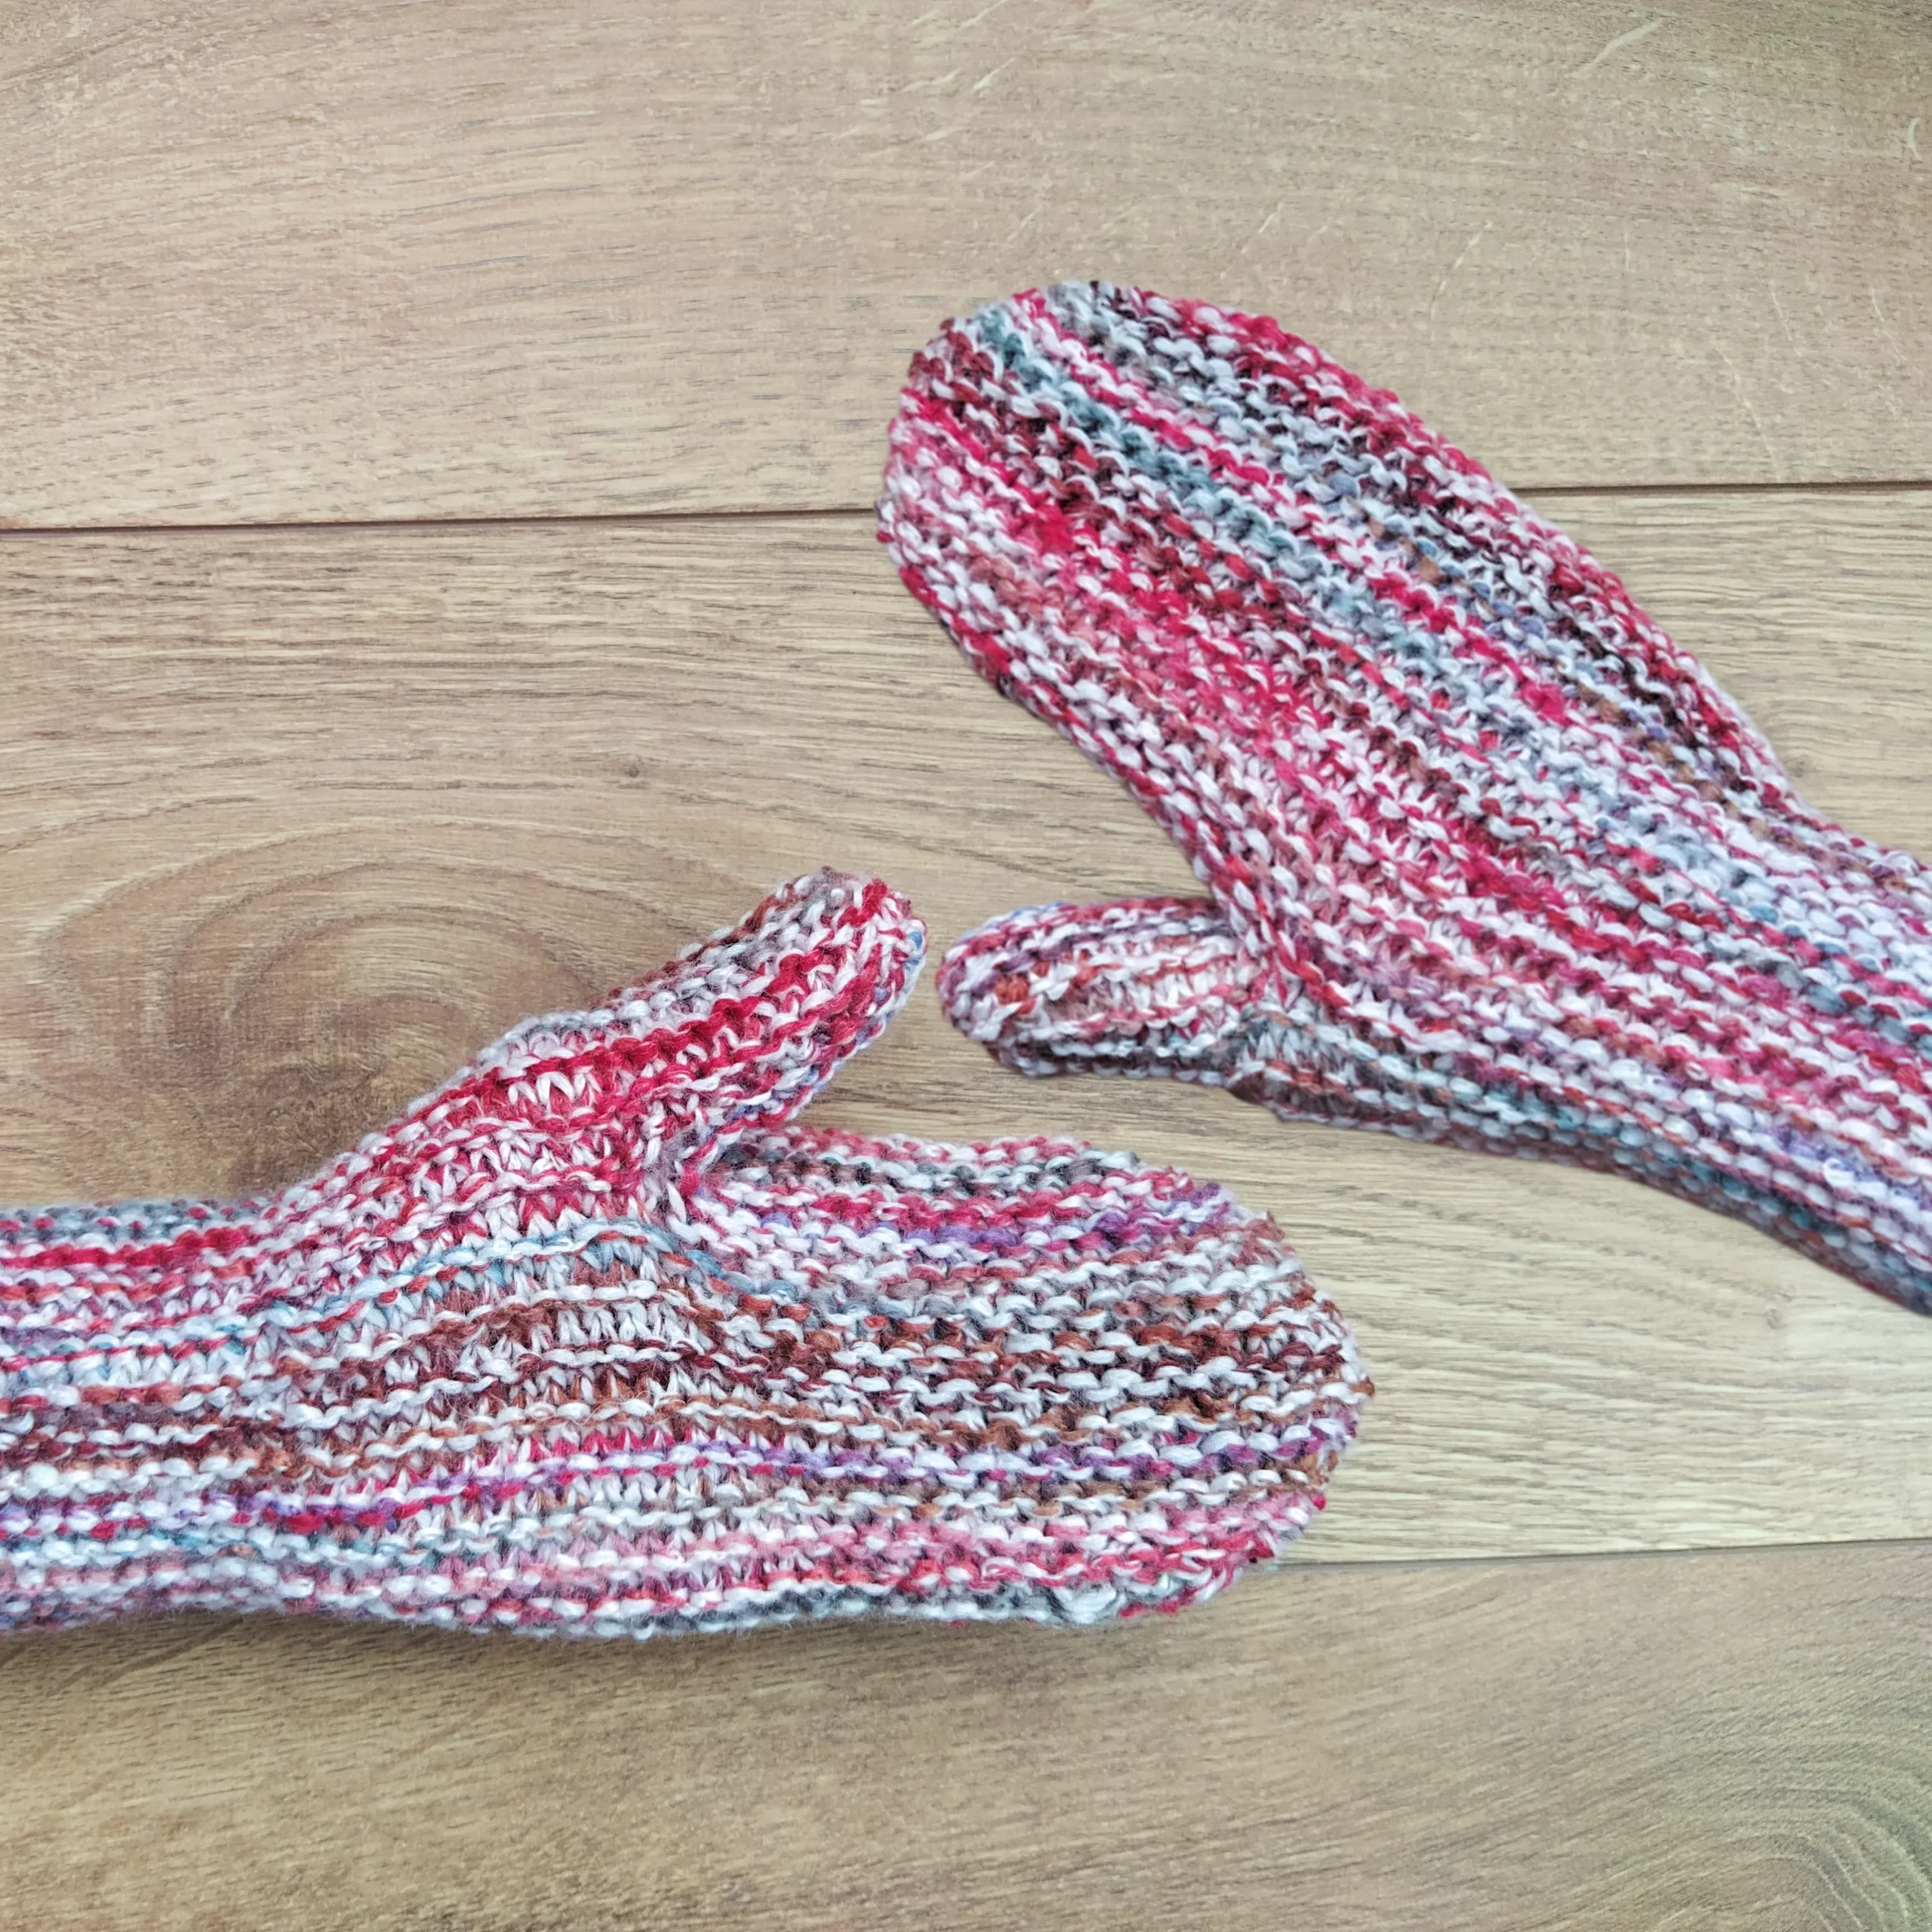 Sideways knit mittens being worn